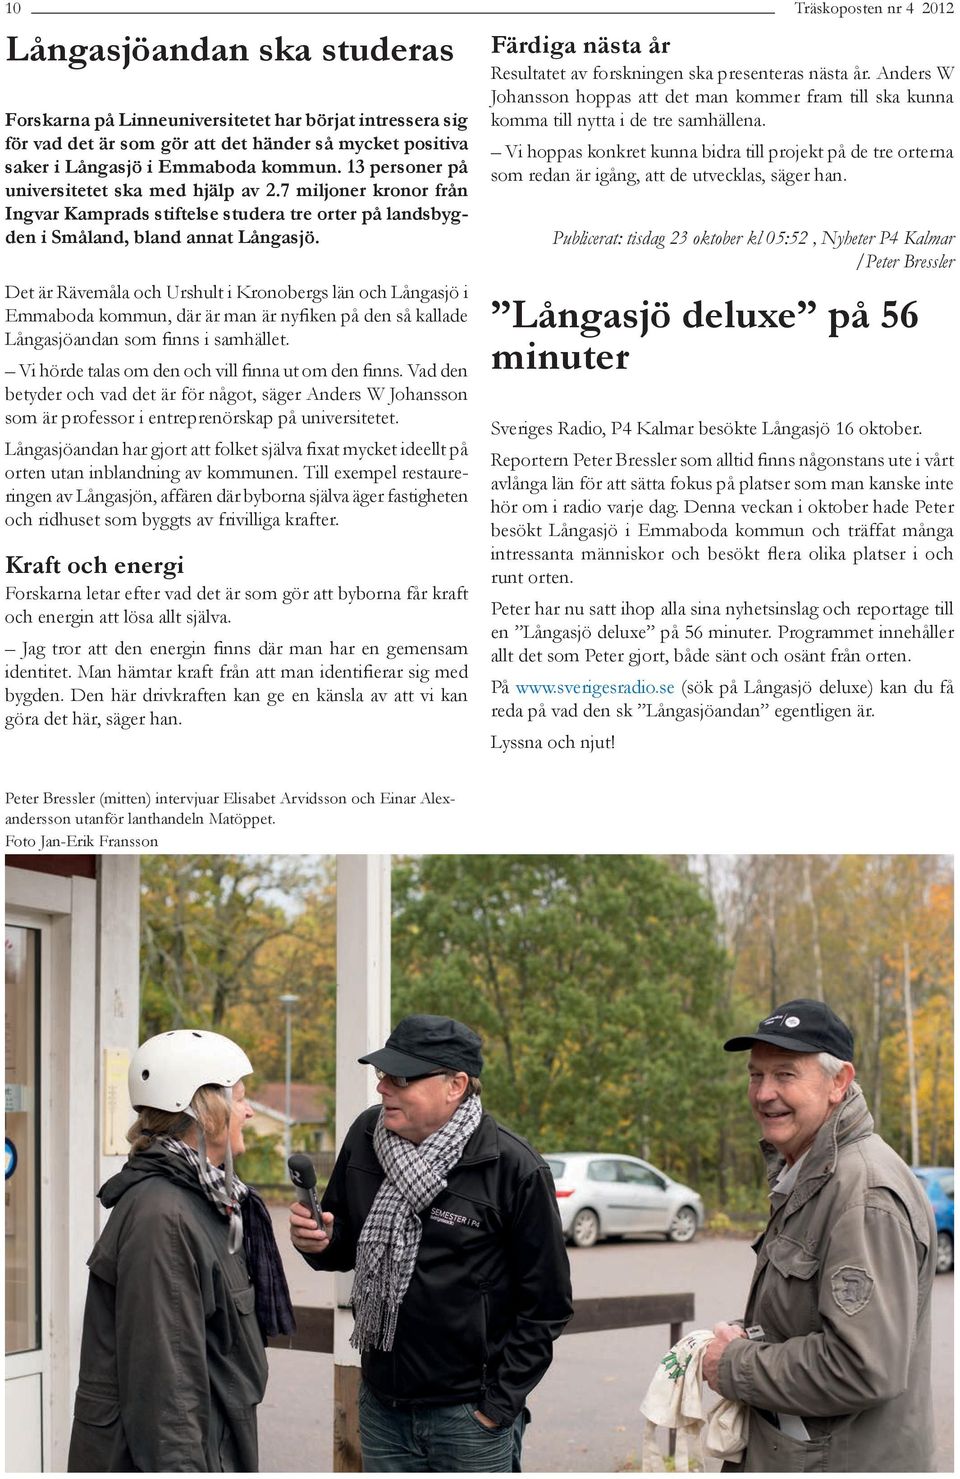 Det är Rävemåla och Urshult i Kronobergs län och Långasjö i Emmaboda kommun, där är man är nyfiken på den så kallade Långasjöandan som finns i samhället.